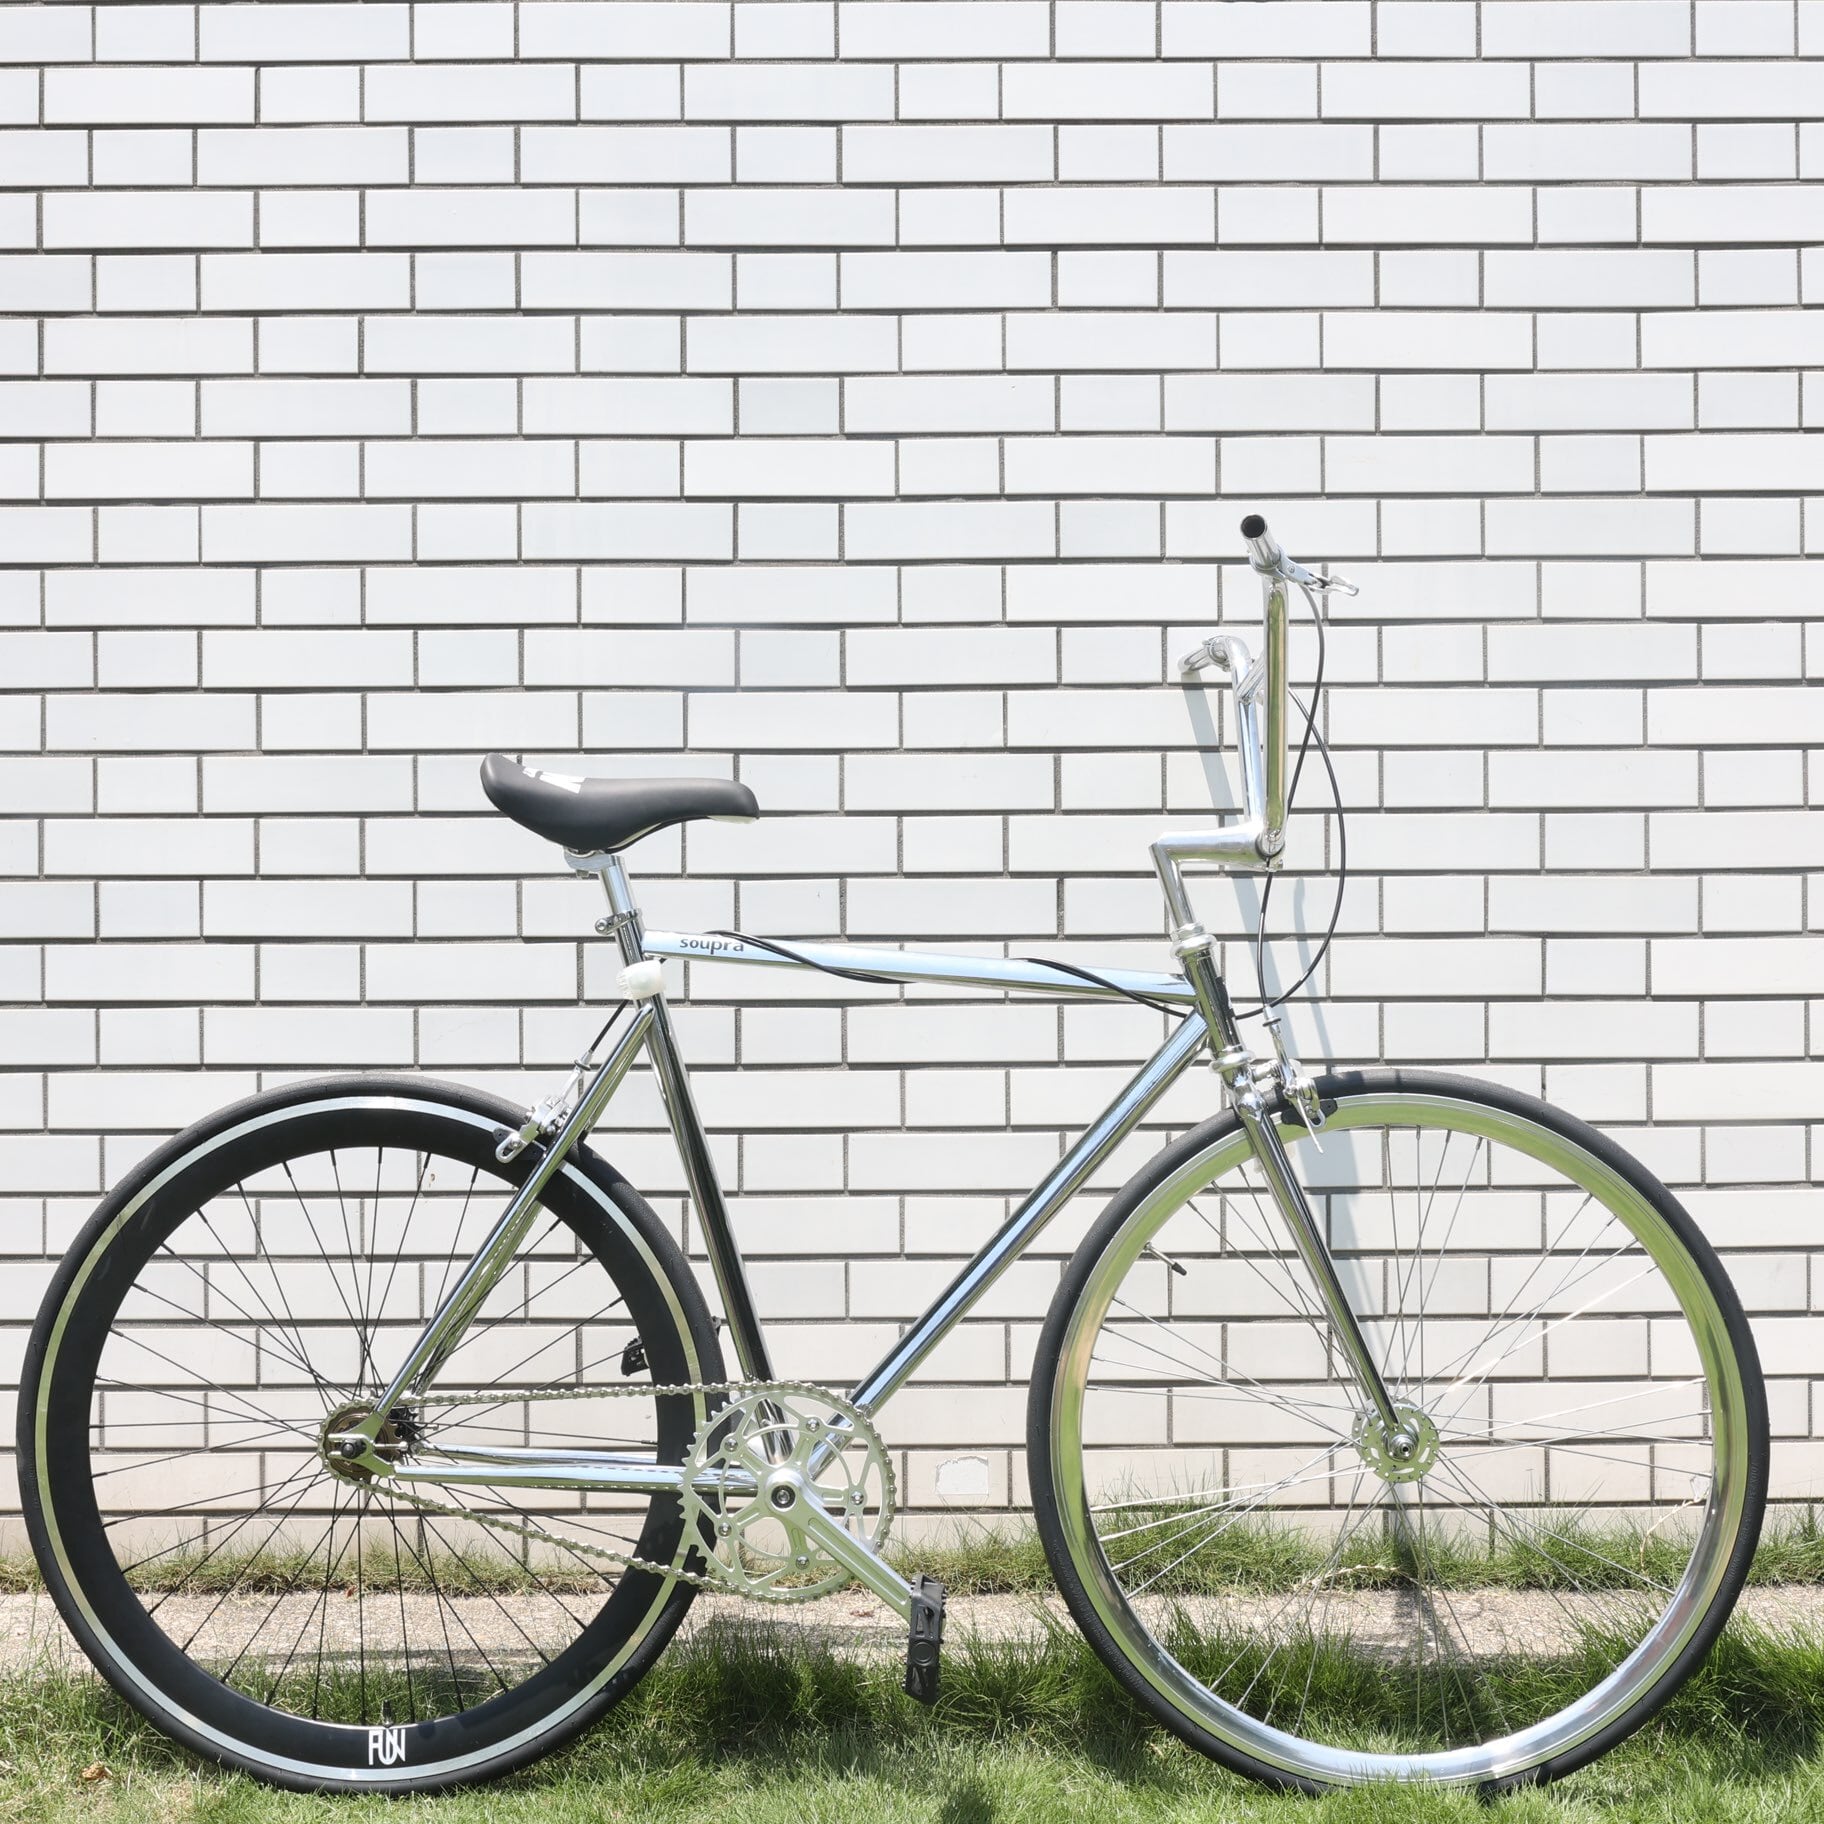 【新品】FUN 700C サイズ55 マットブラック ピストバイク 自転車